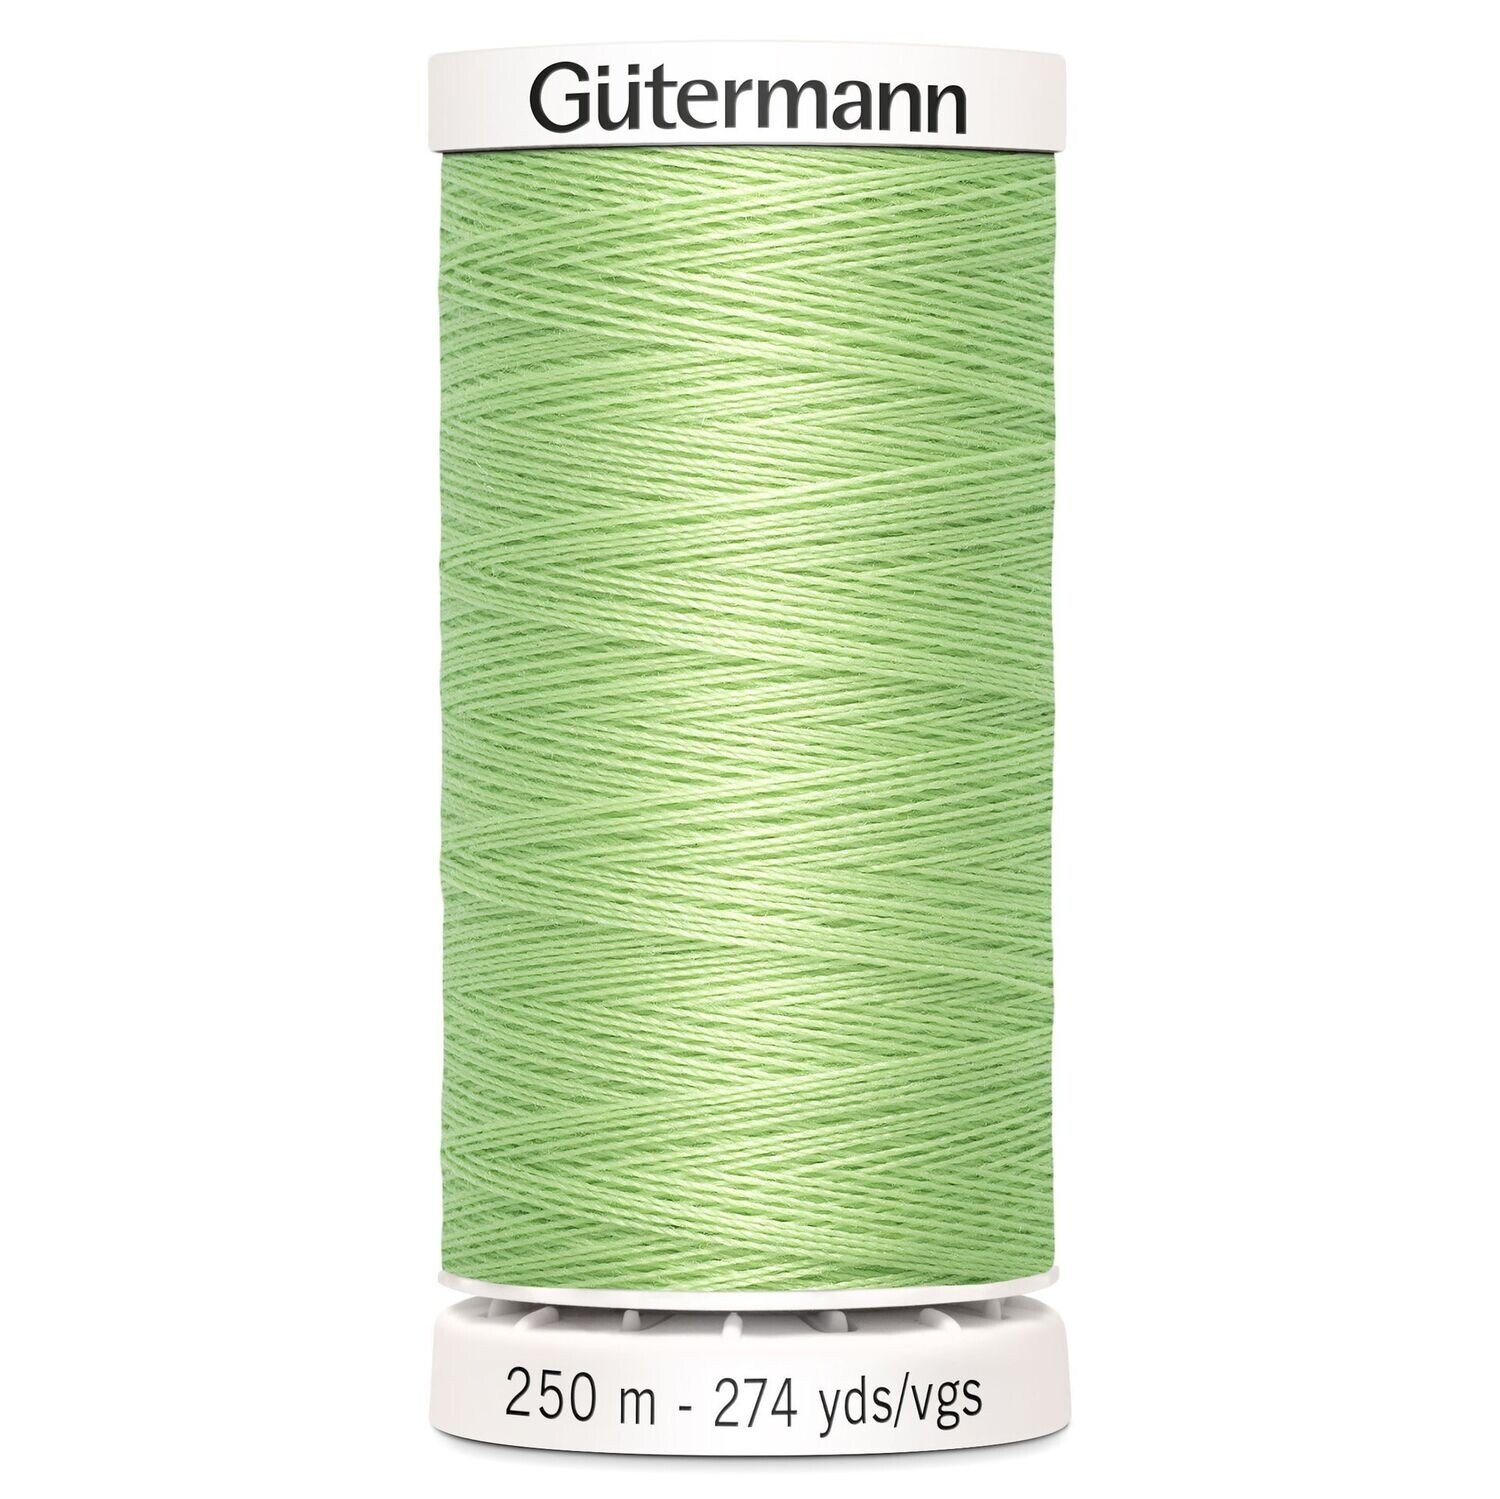 Sew All Thread 250m- Gutermann - Colour 152